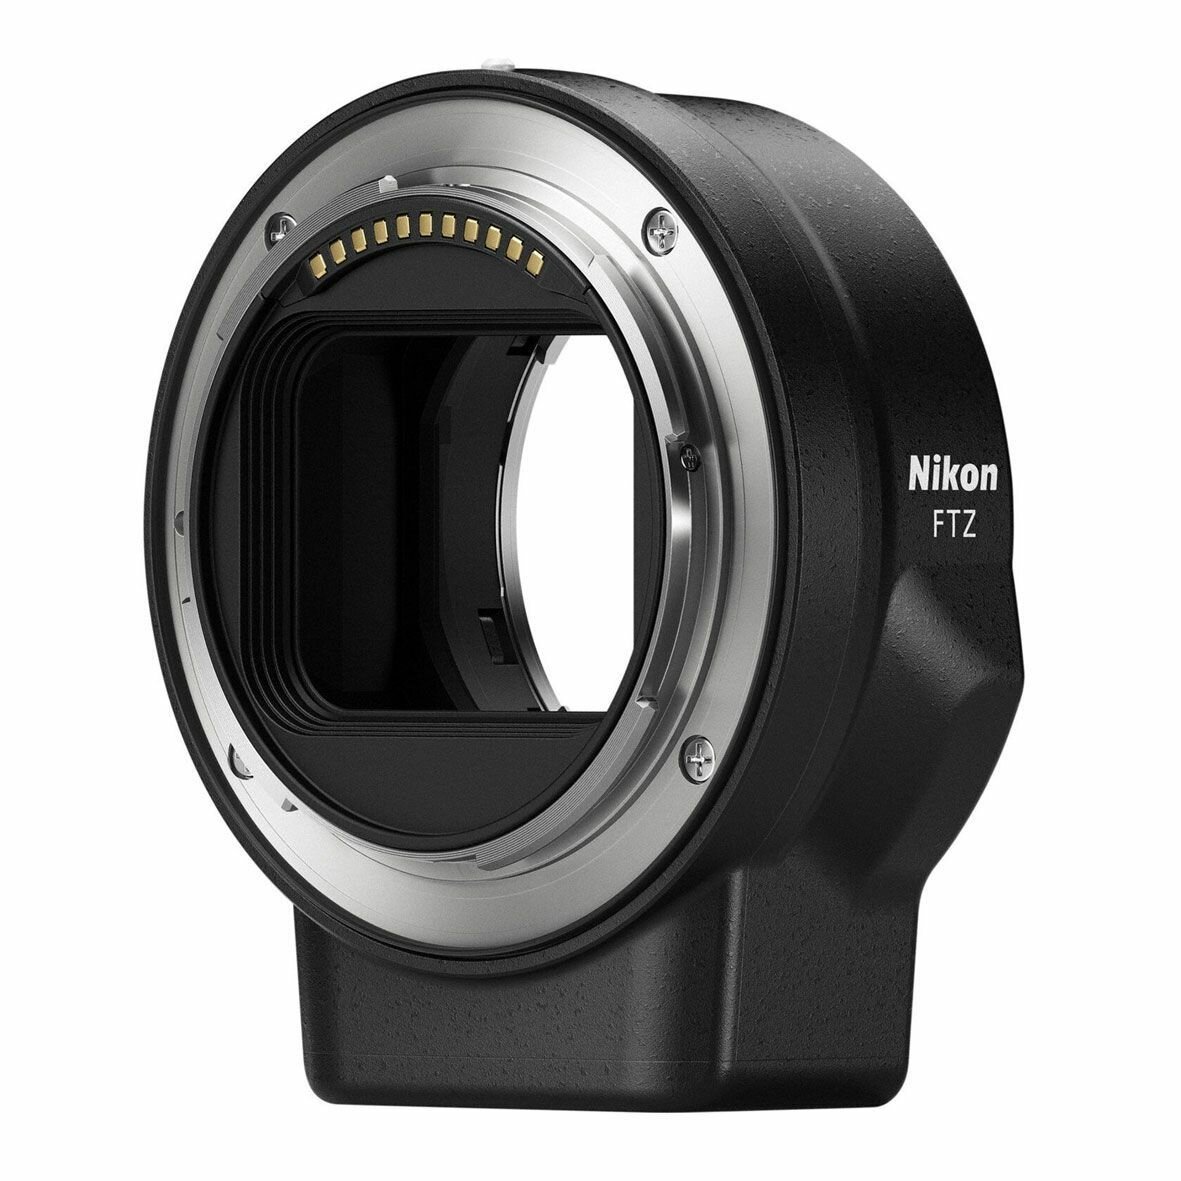 Переходное кольцо Nikon FTZ с байонета Nikon F на Nikon Z с управлением функциями объектива